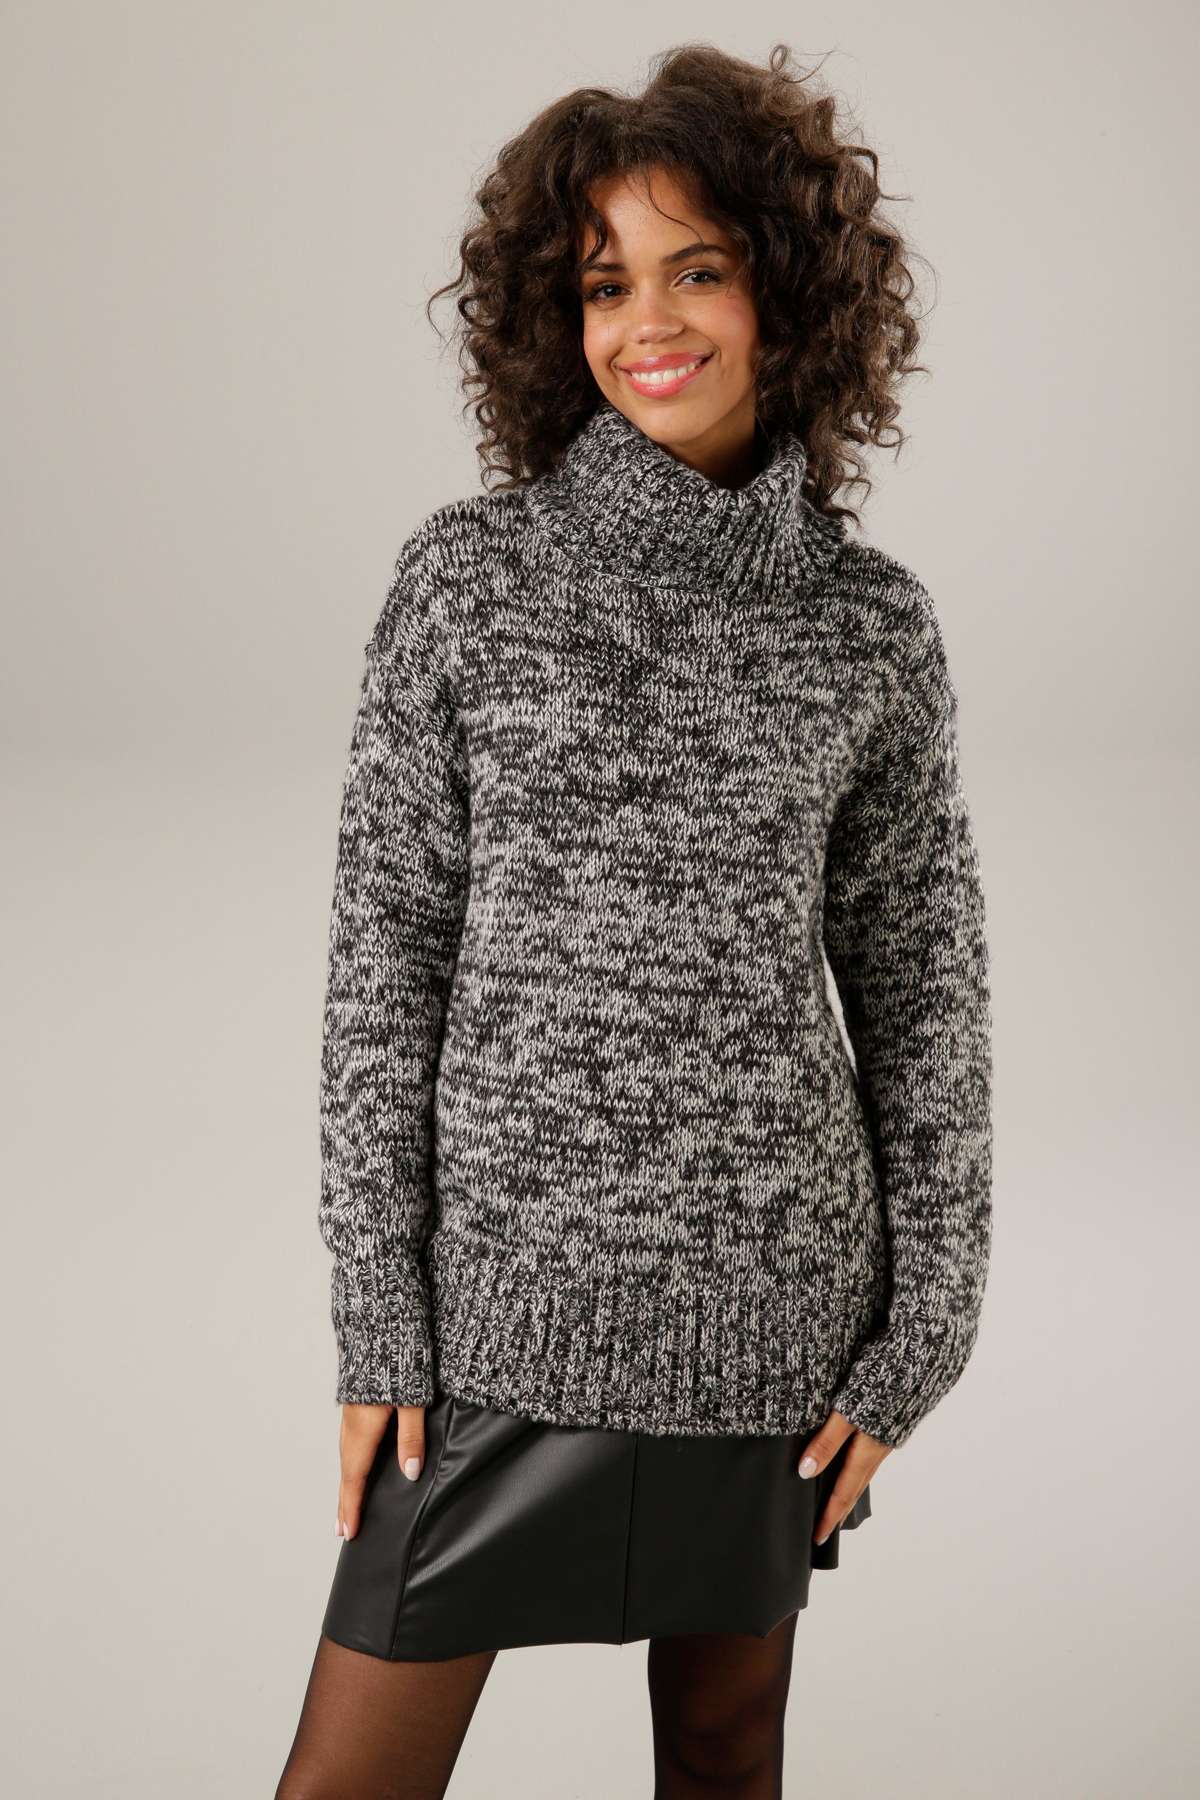 Вязаный свитер из модной меланжевой пряжи.